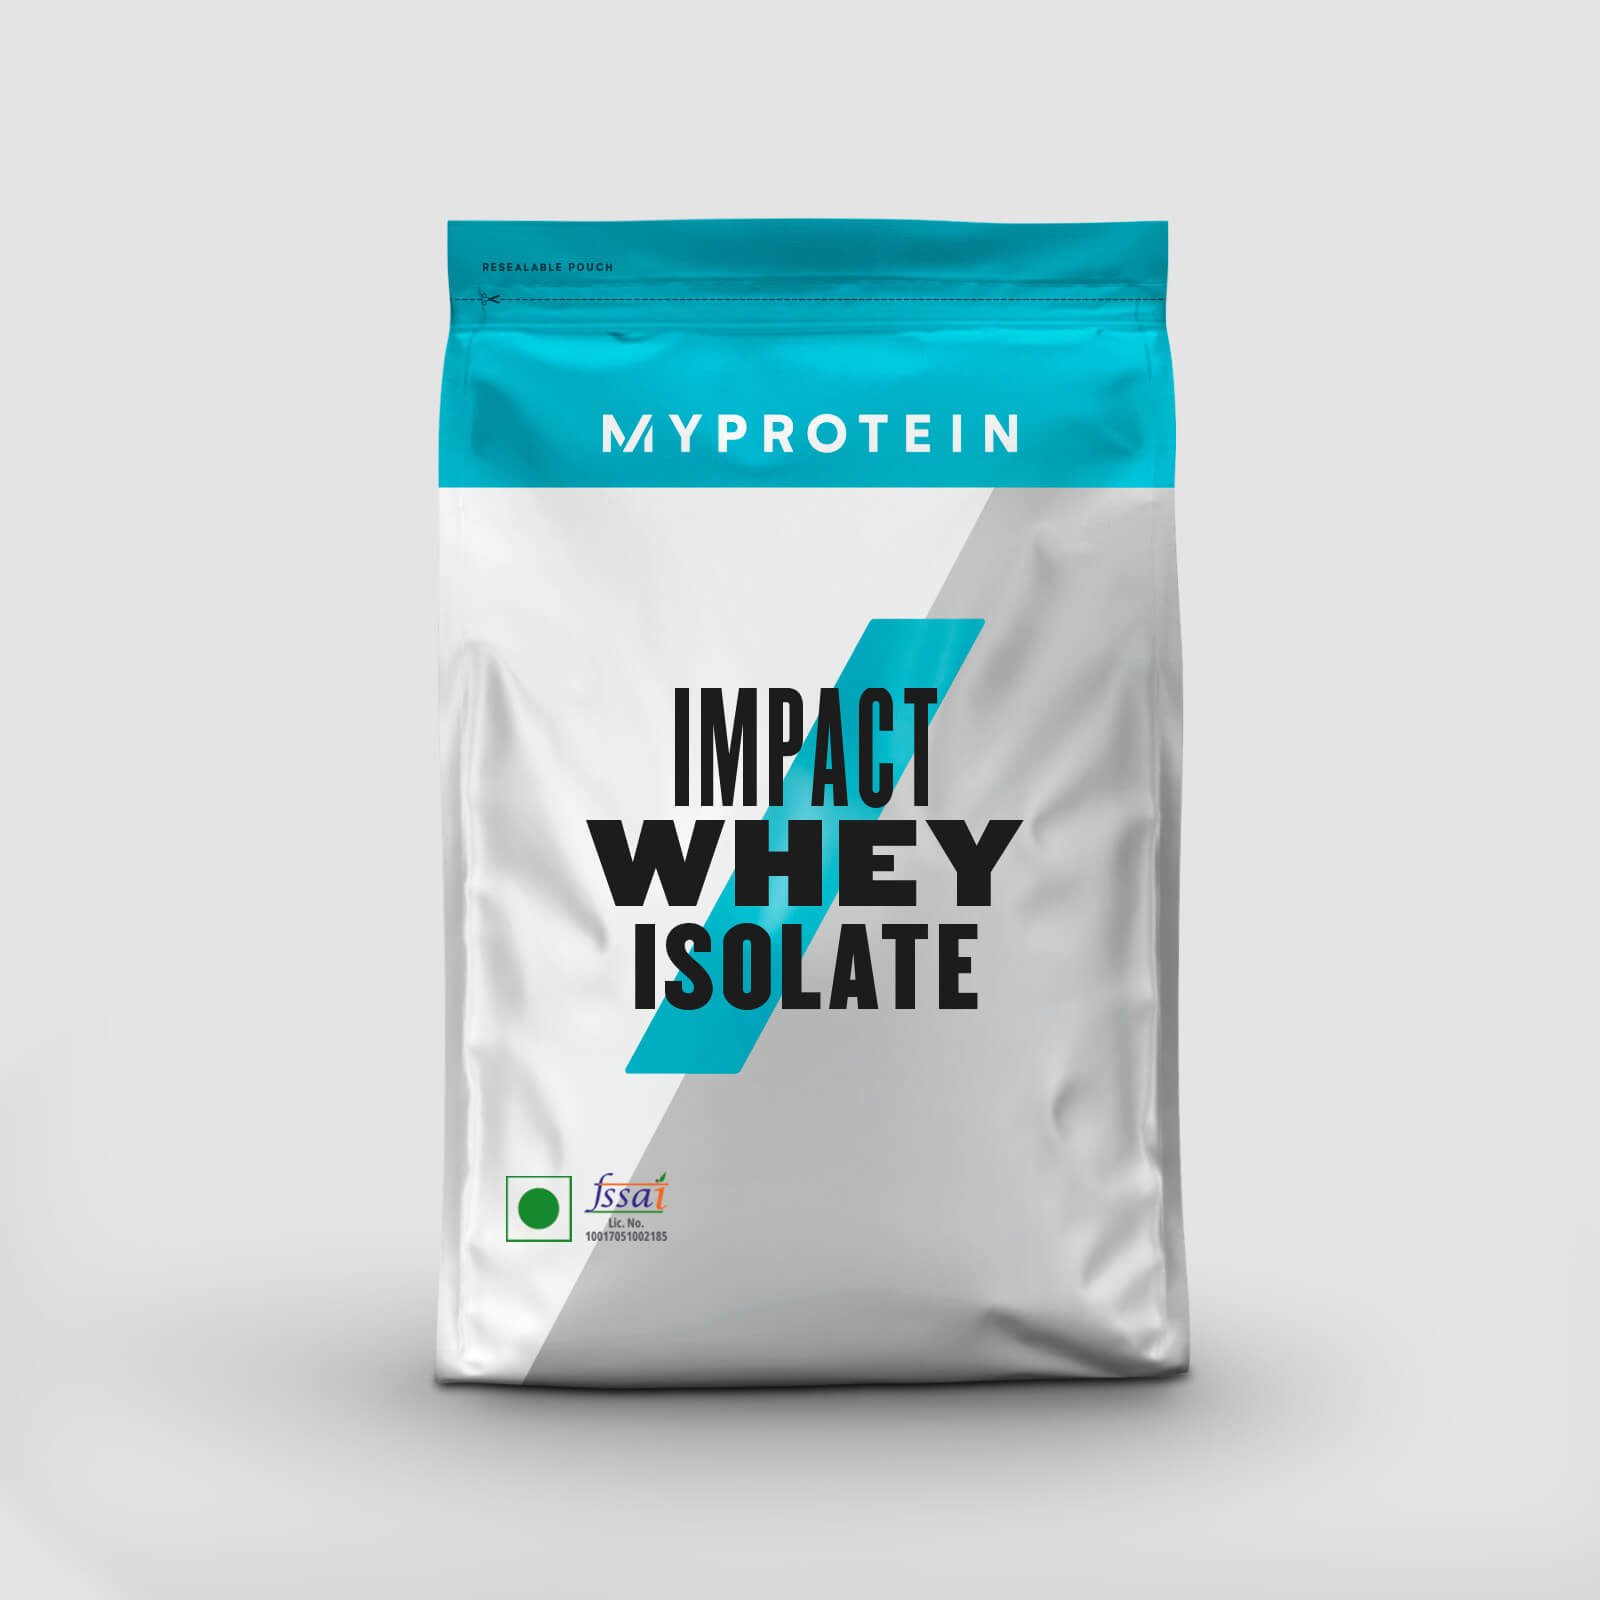 Myprotein Impact Whey Isolate - PowerGenx